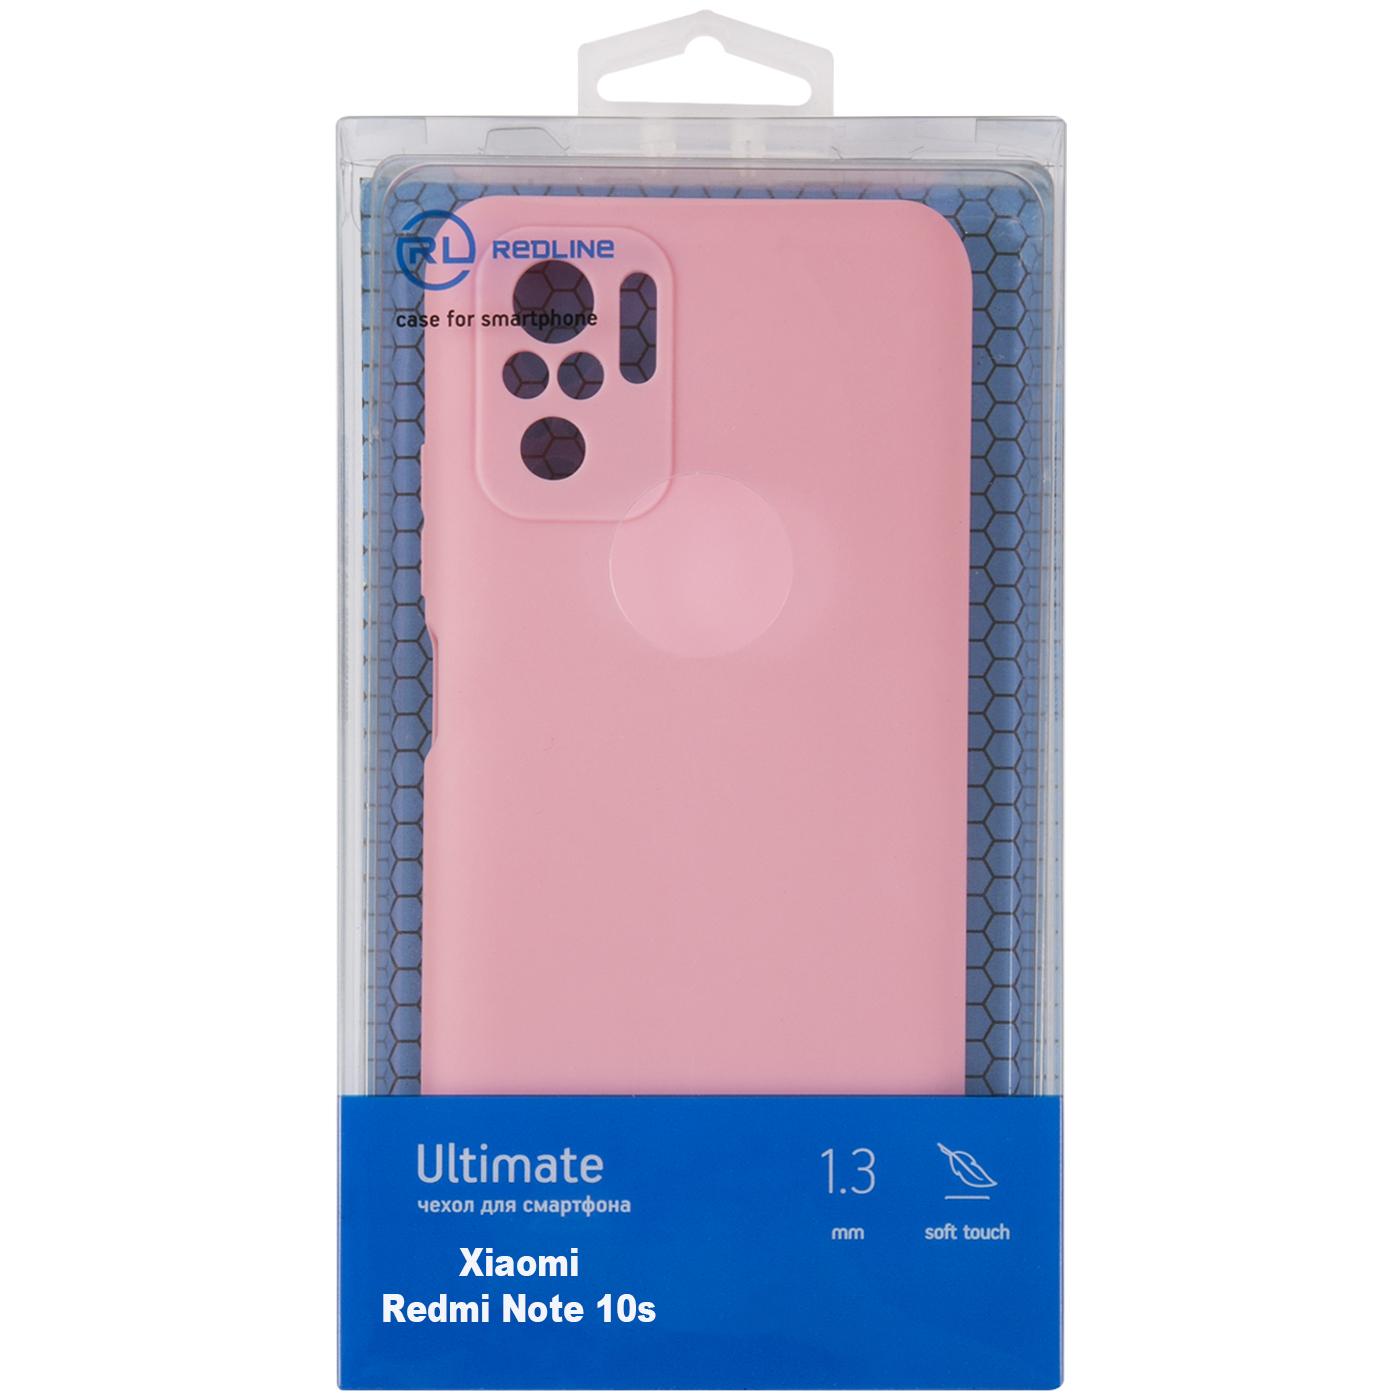 Чехол защитный Red Line Ultimate для Xiaomi Redmi Note 10s, розовый УТ000026526 чехол red line ultimate для xiaomi redmi note 10 10s черный